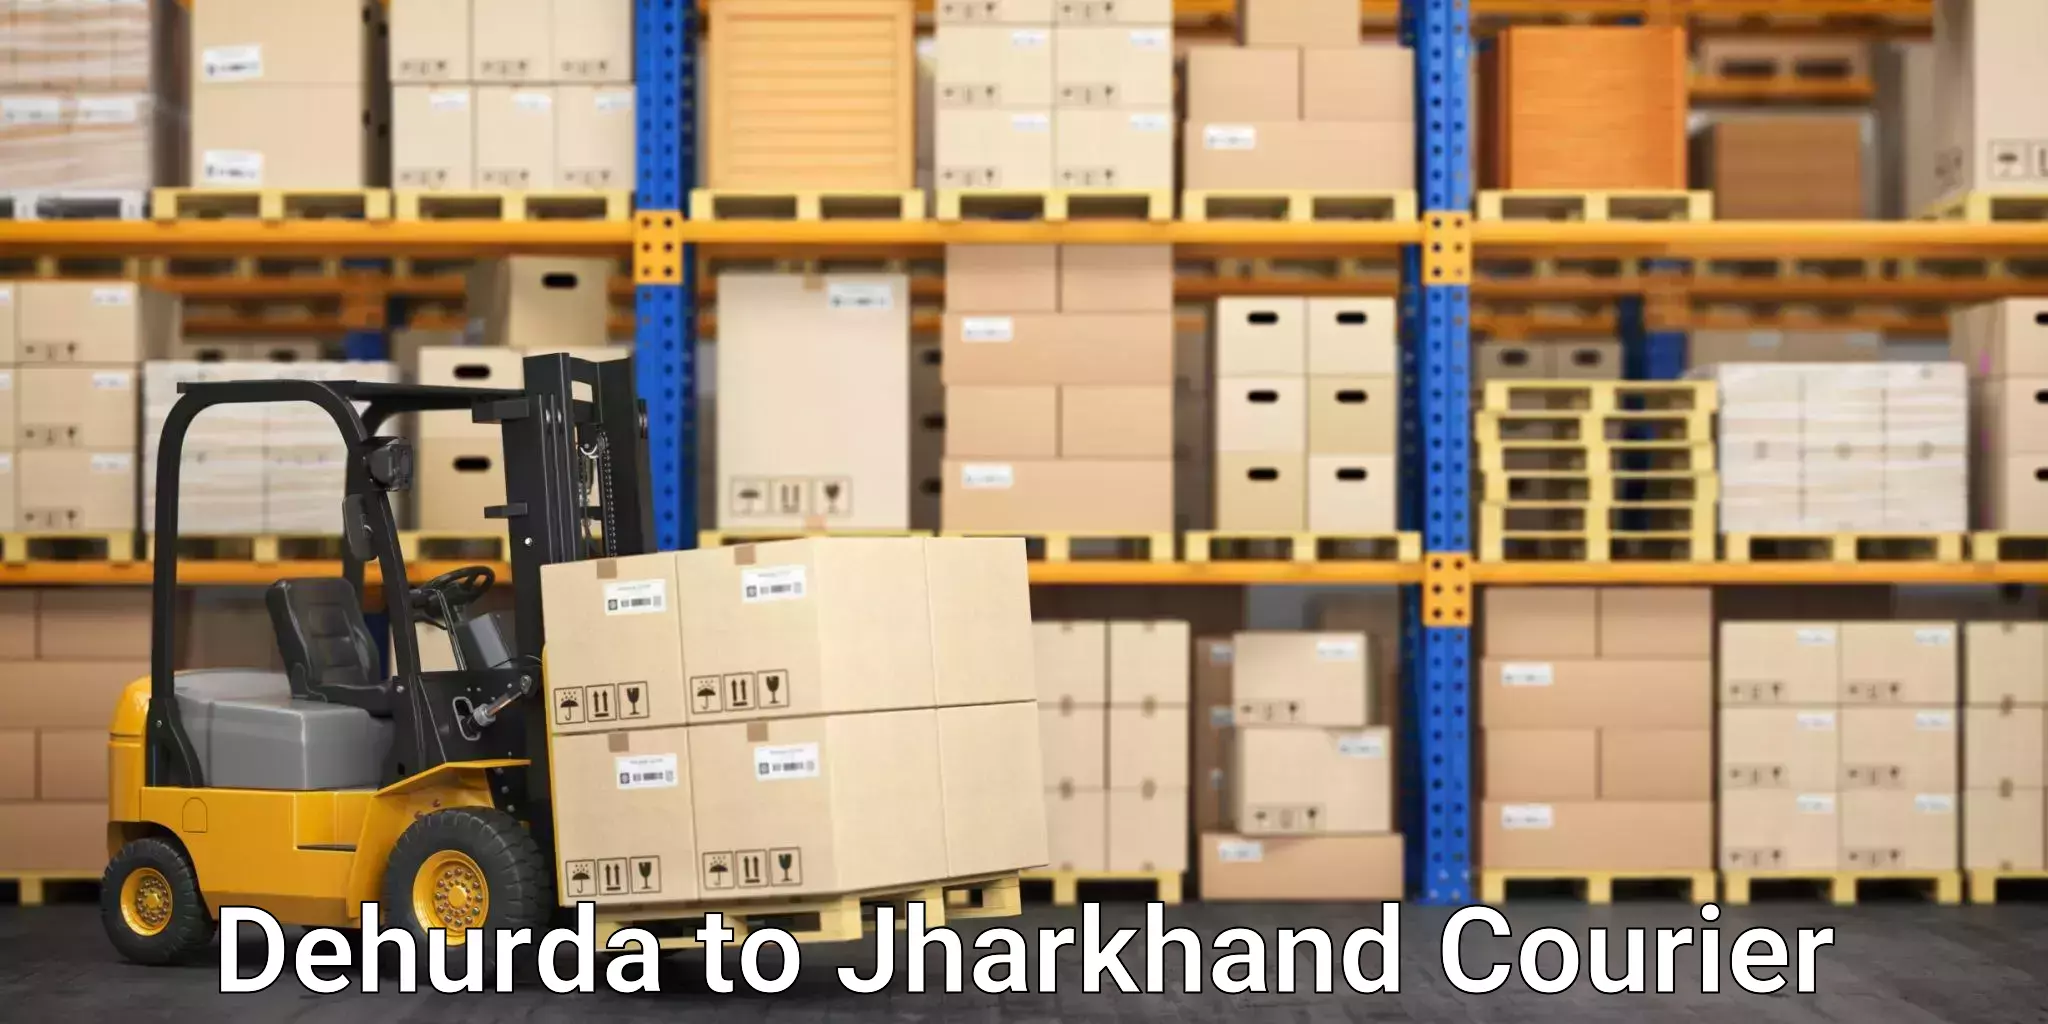 Bulk shipping discounts Dehurda to Govindpur